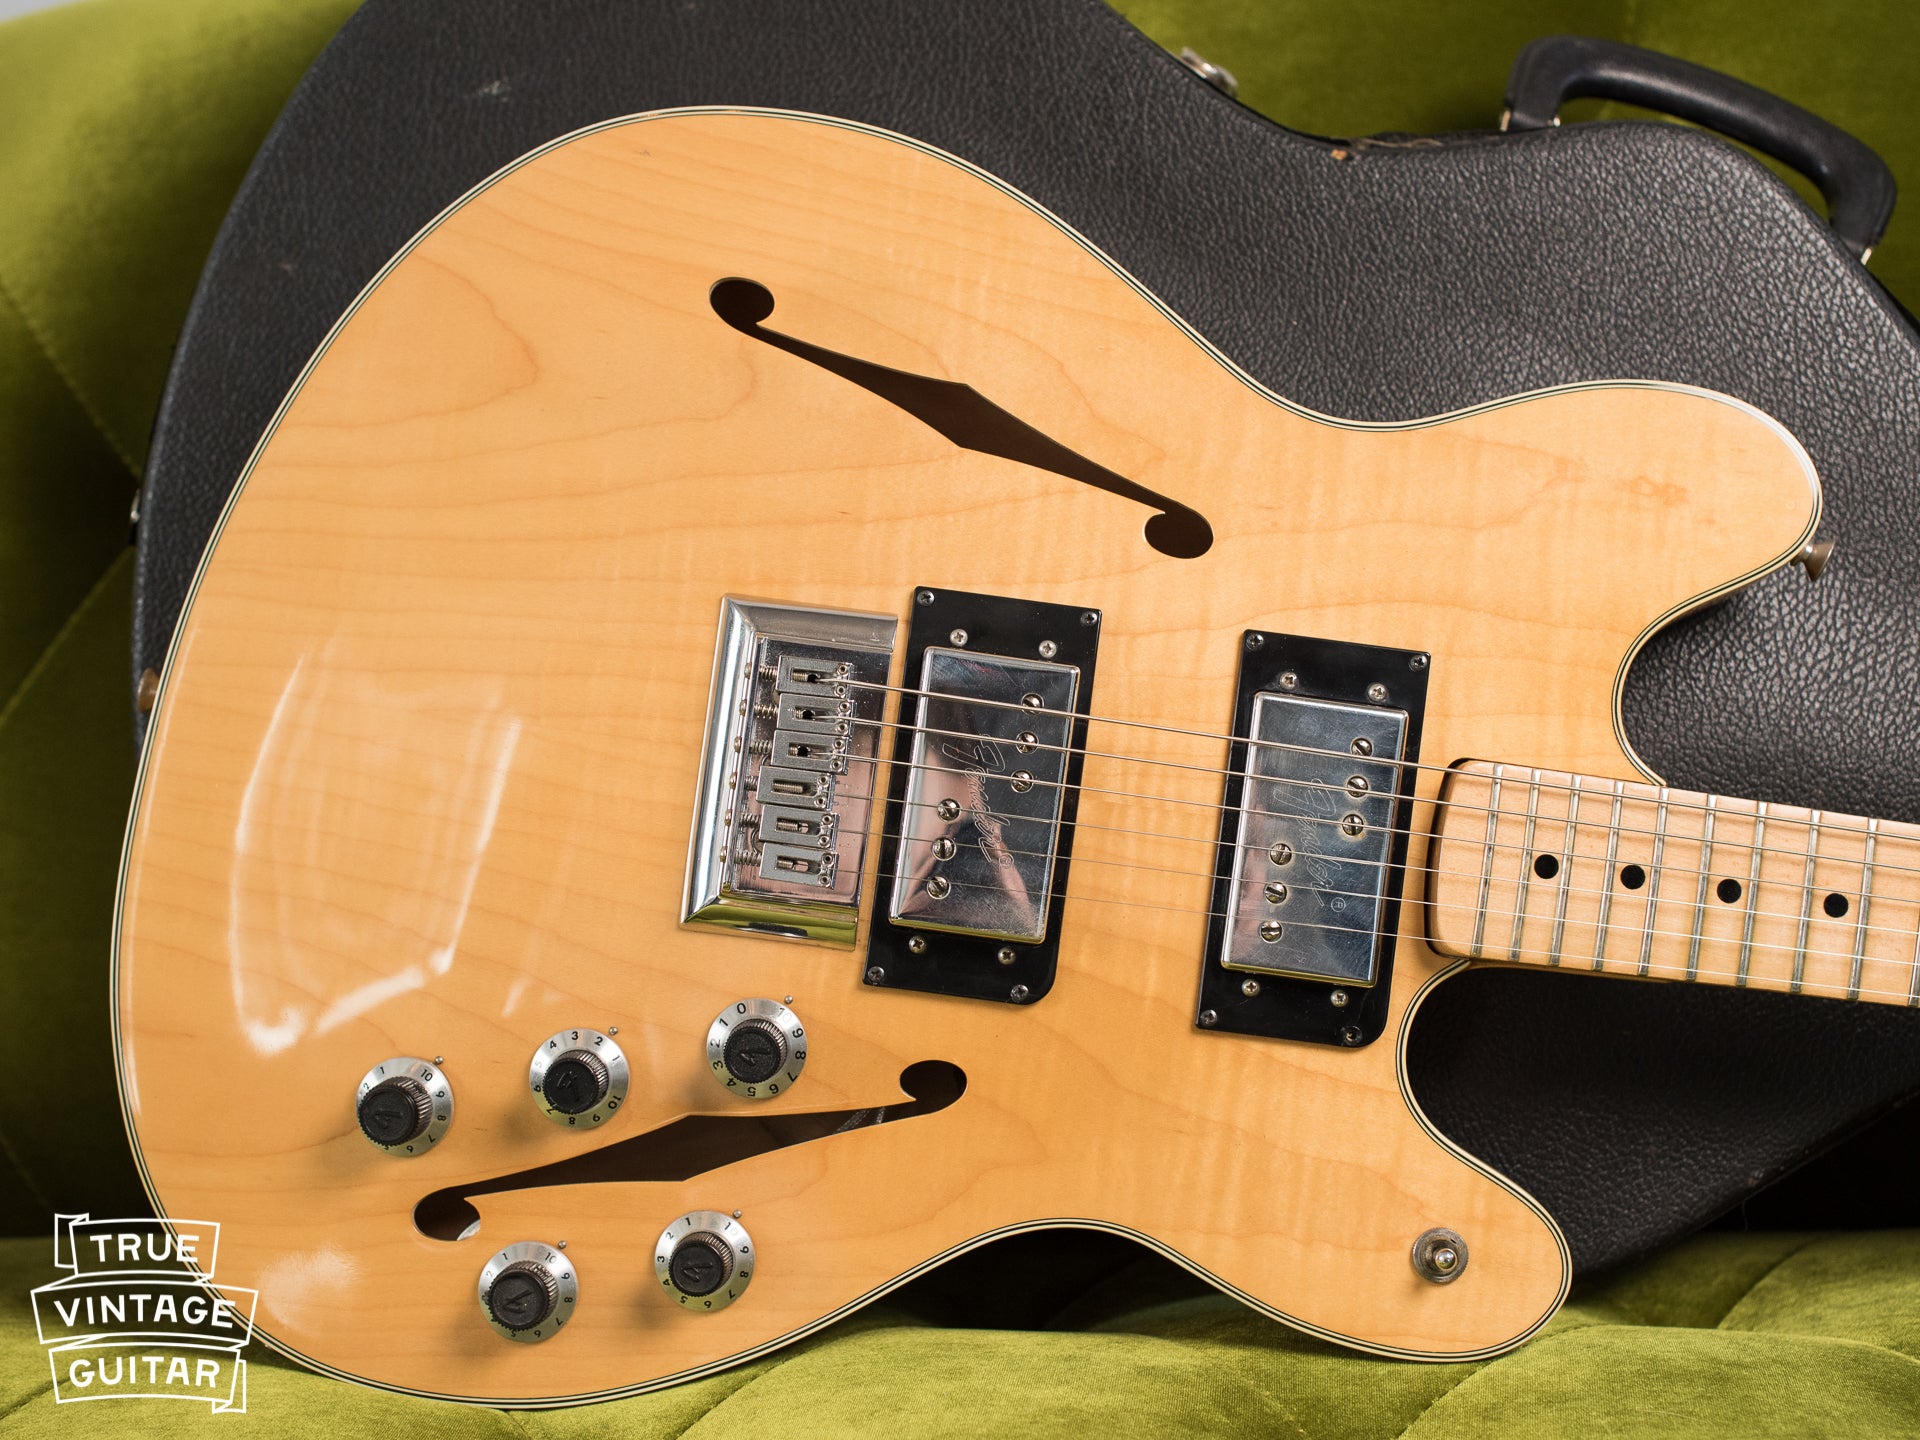 Vintage 1976 Fender Starcaster guitar